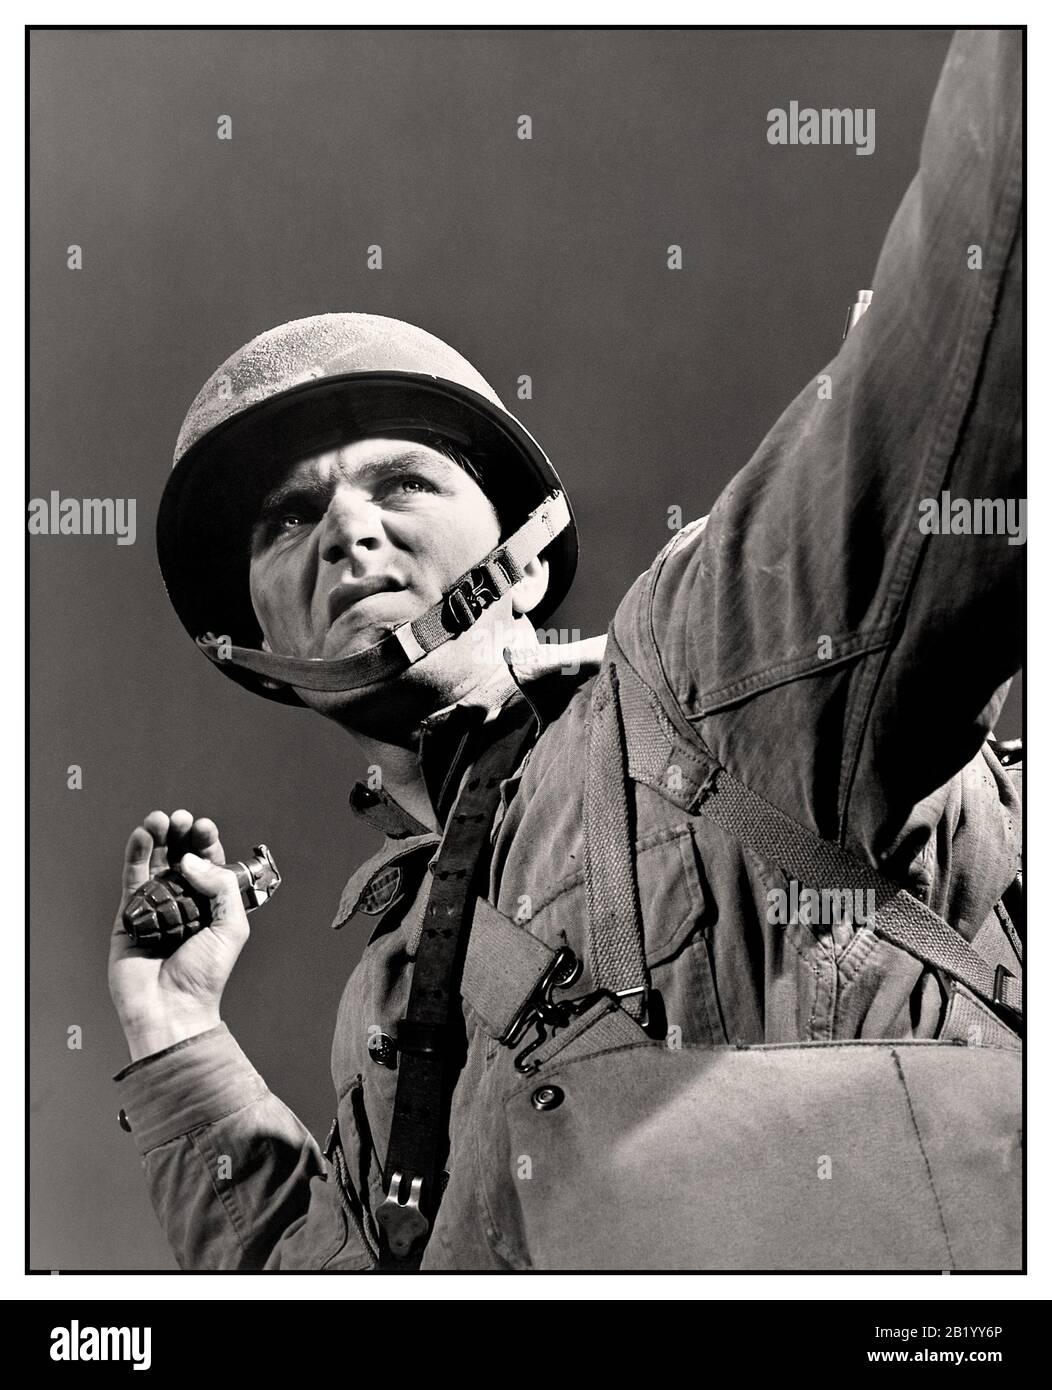 WW2 American Propaganda foto di un soldato americano dell'esercito di GI fantyman sul punto di lanciare una granata, immagine intitolata 'un pacchetto per Hitler' Fort Belvoir, Virginia. Grenade thrower infantryman con lo sguardo di determinazione sul suo volto durante l'addestramento a Fort Belvoir, Virginia USA che si prepara a lanciare la sua granata. Novembre 1942 Foto Stock